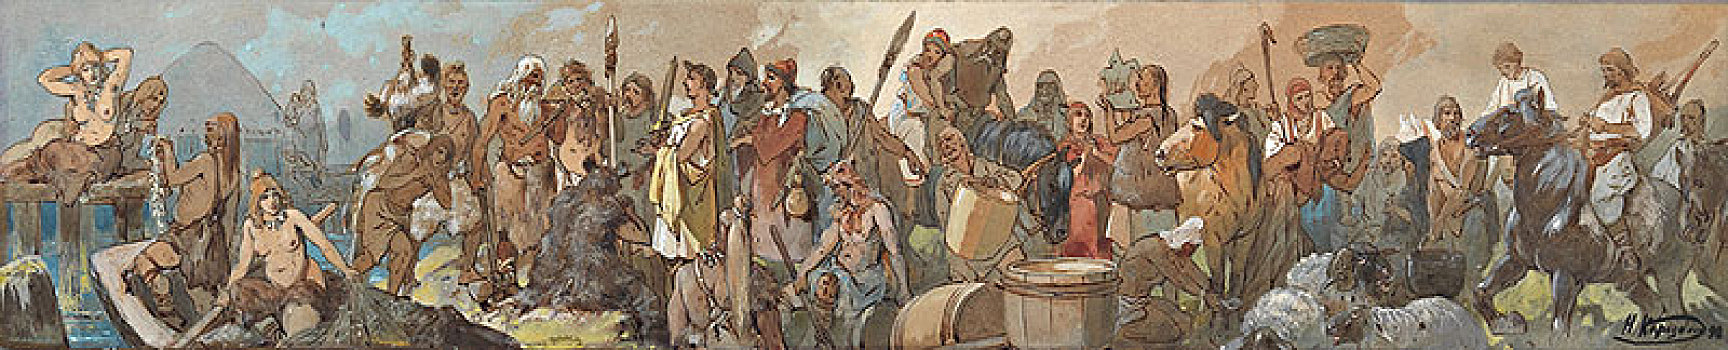 历史,交易,1898年,艺术家